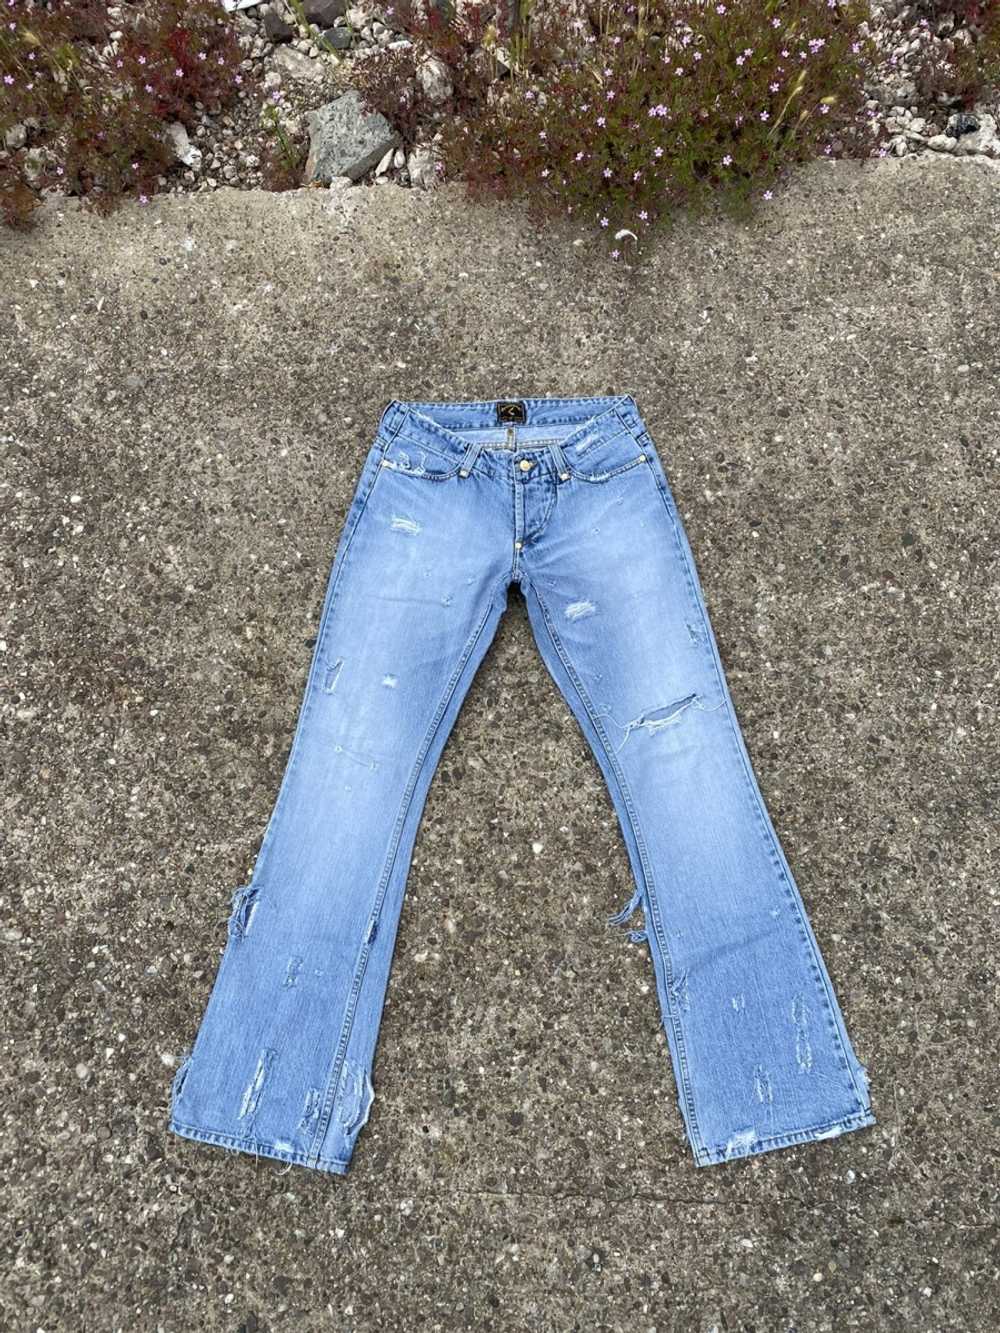 Vivienne Westwood RARE flared vintage denim jeans… - image 1